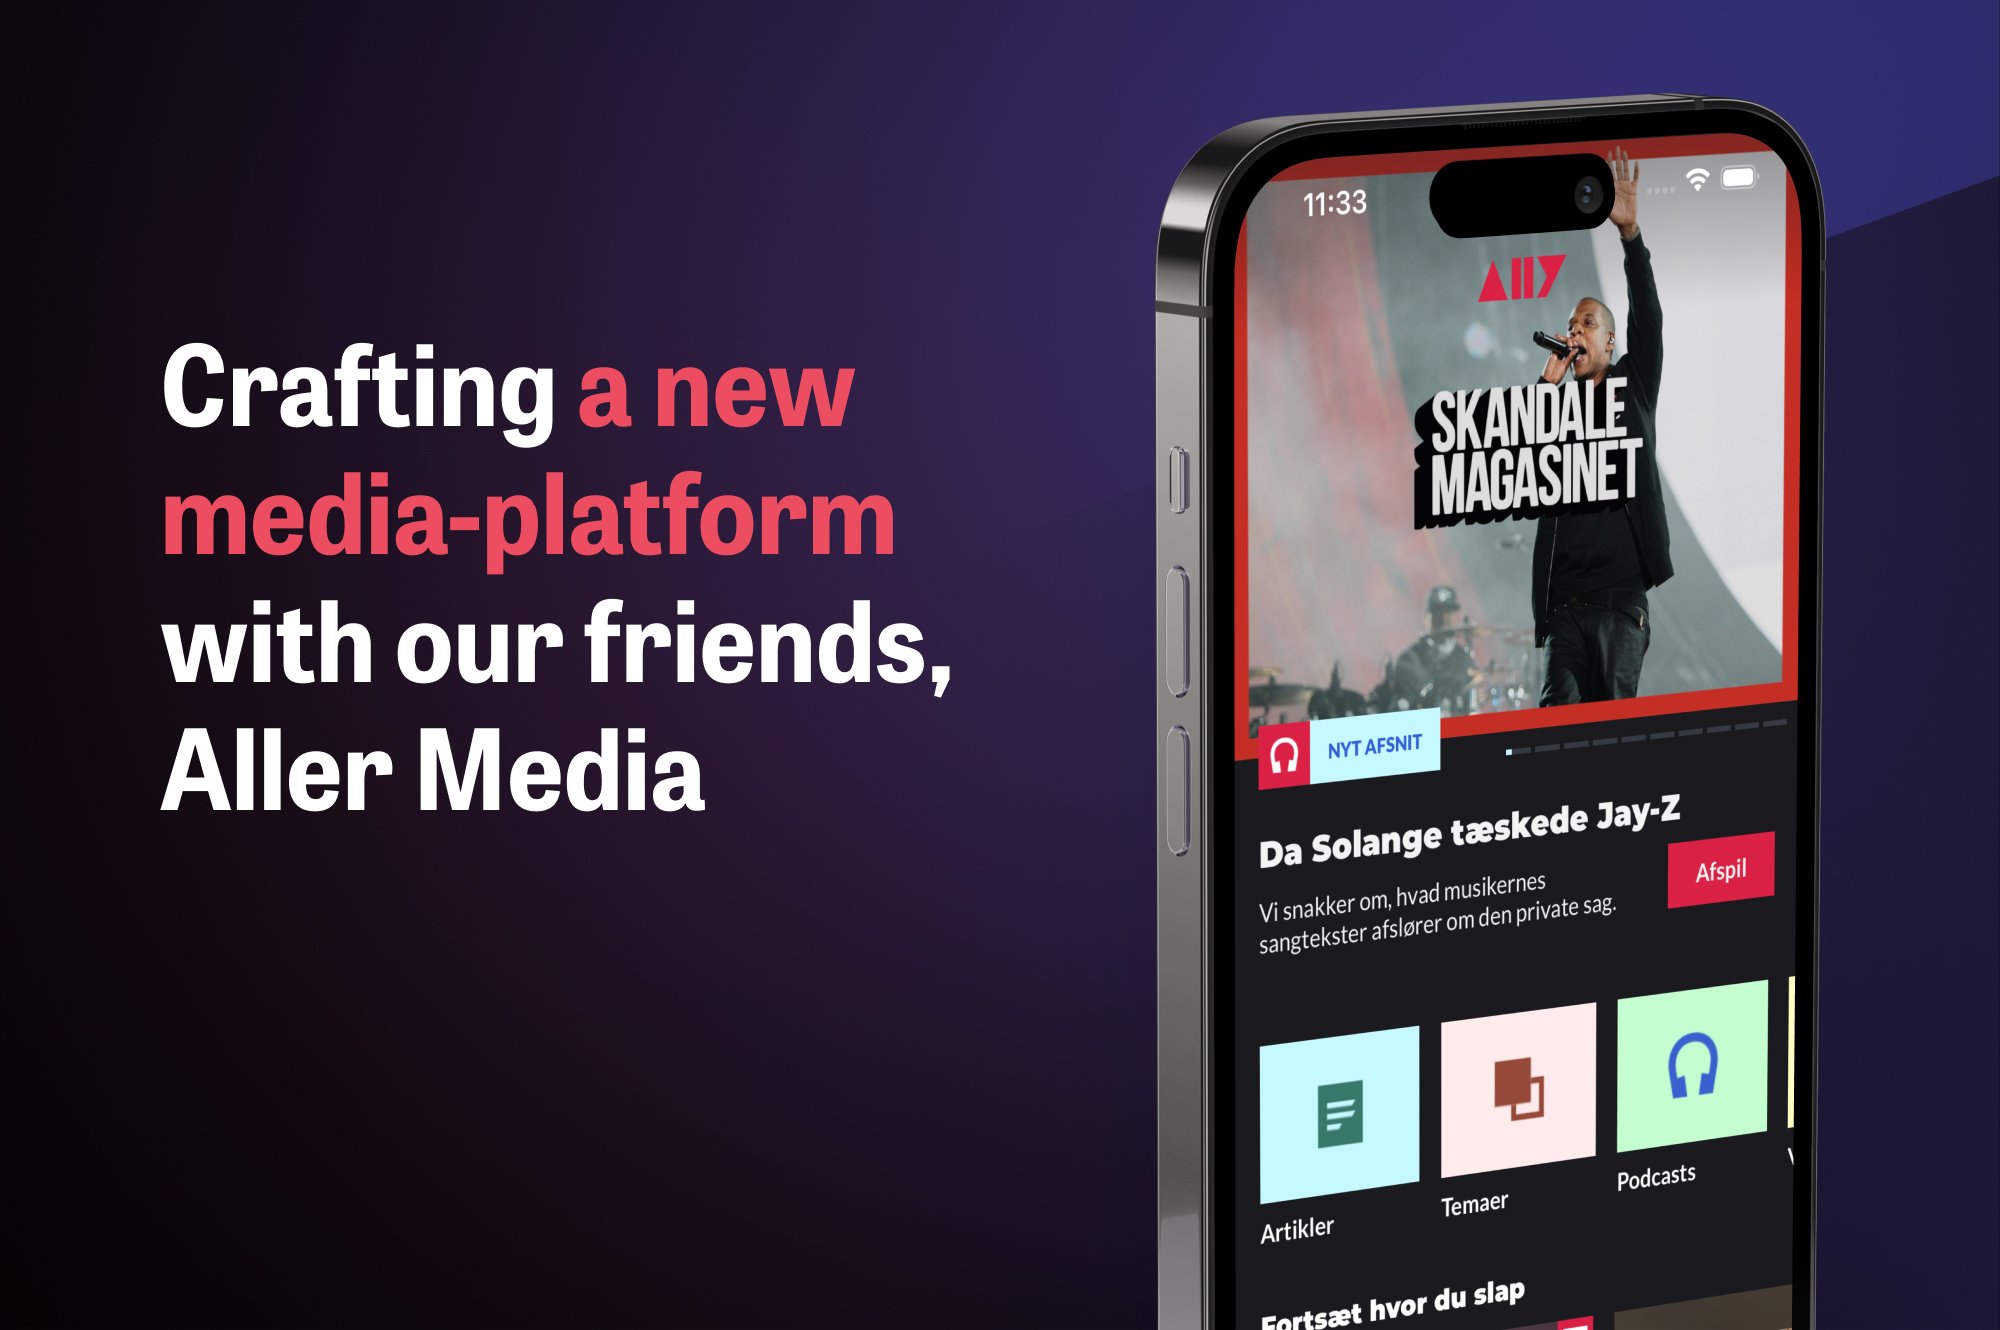 A new media platform ALLY